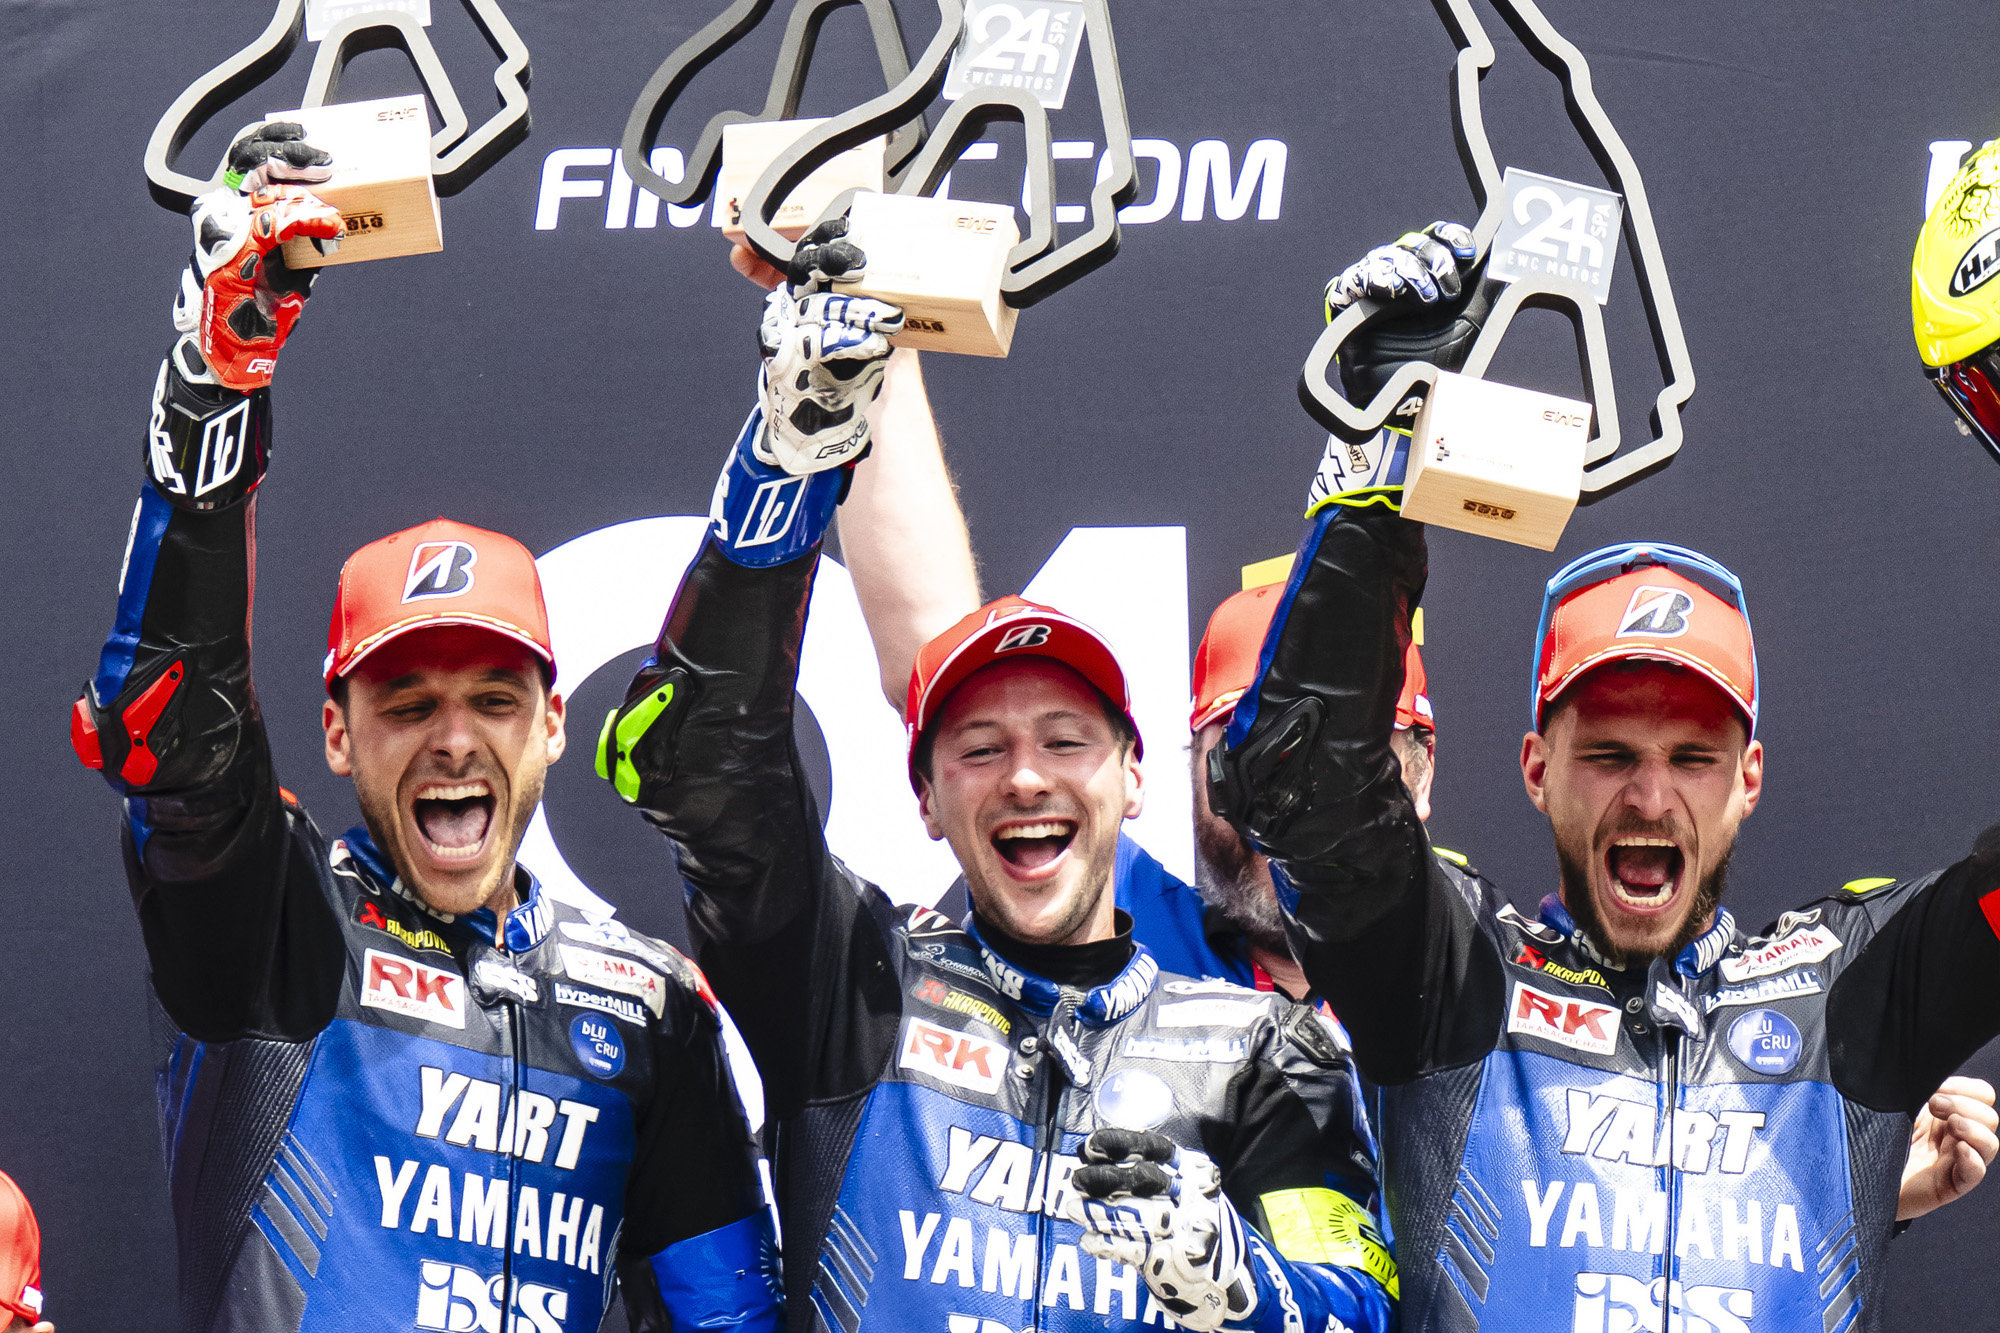 続く第2戦スパ24時間耐久レースでは、2020年以来の優勝を果たしランキングトップへ。